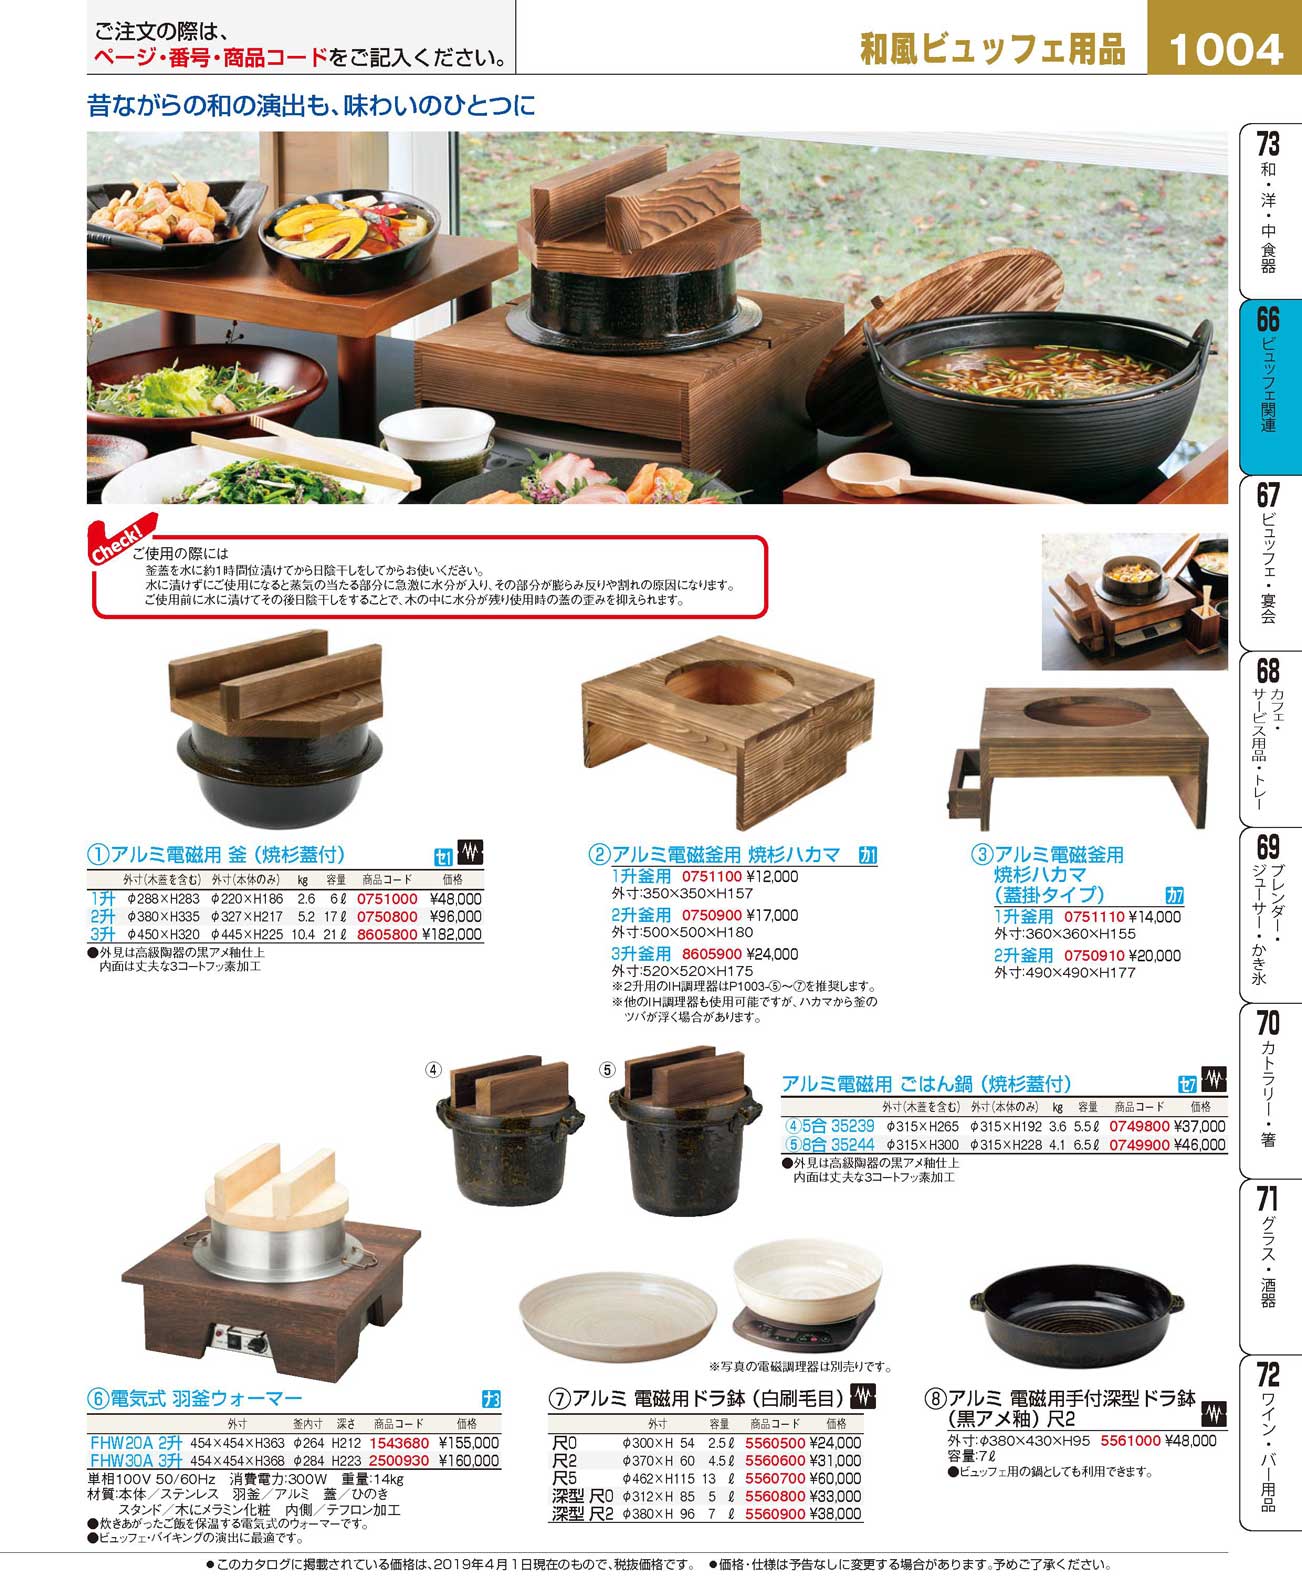 食器 和風ビュッフェ用品Goods for Japanese Style Buffet